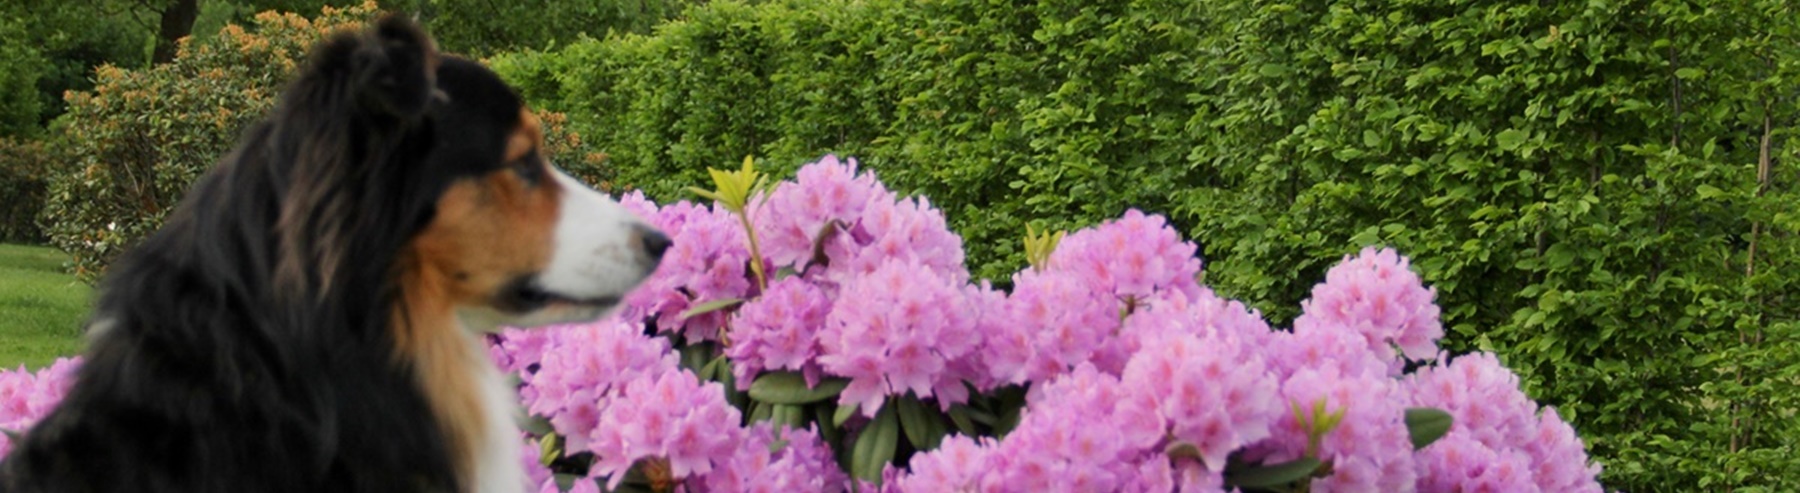 Rhododendron flieder.jpg